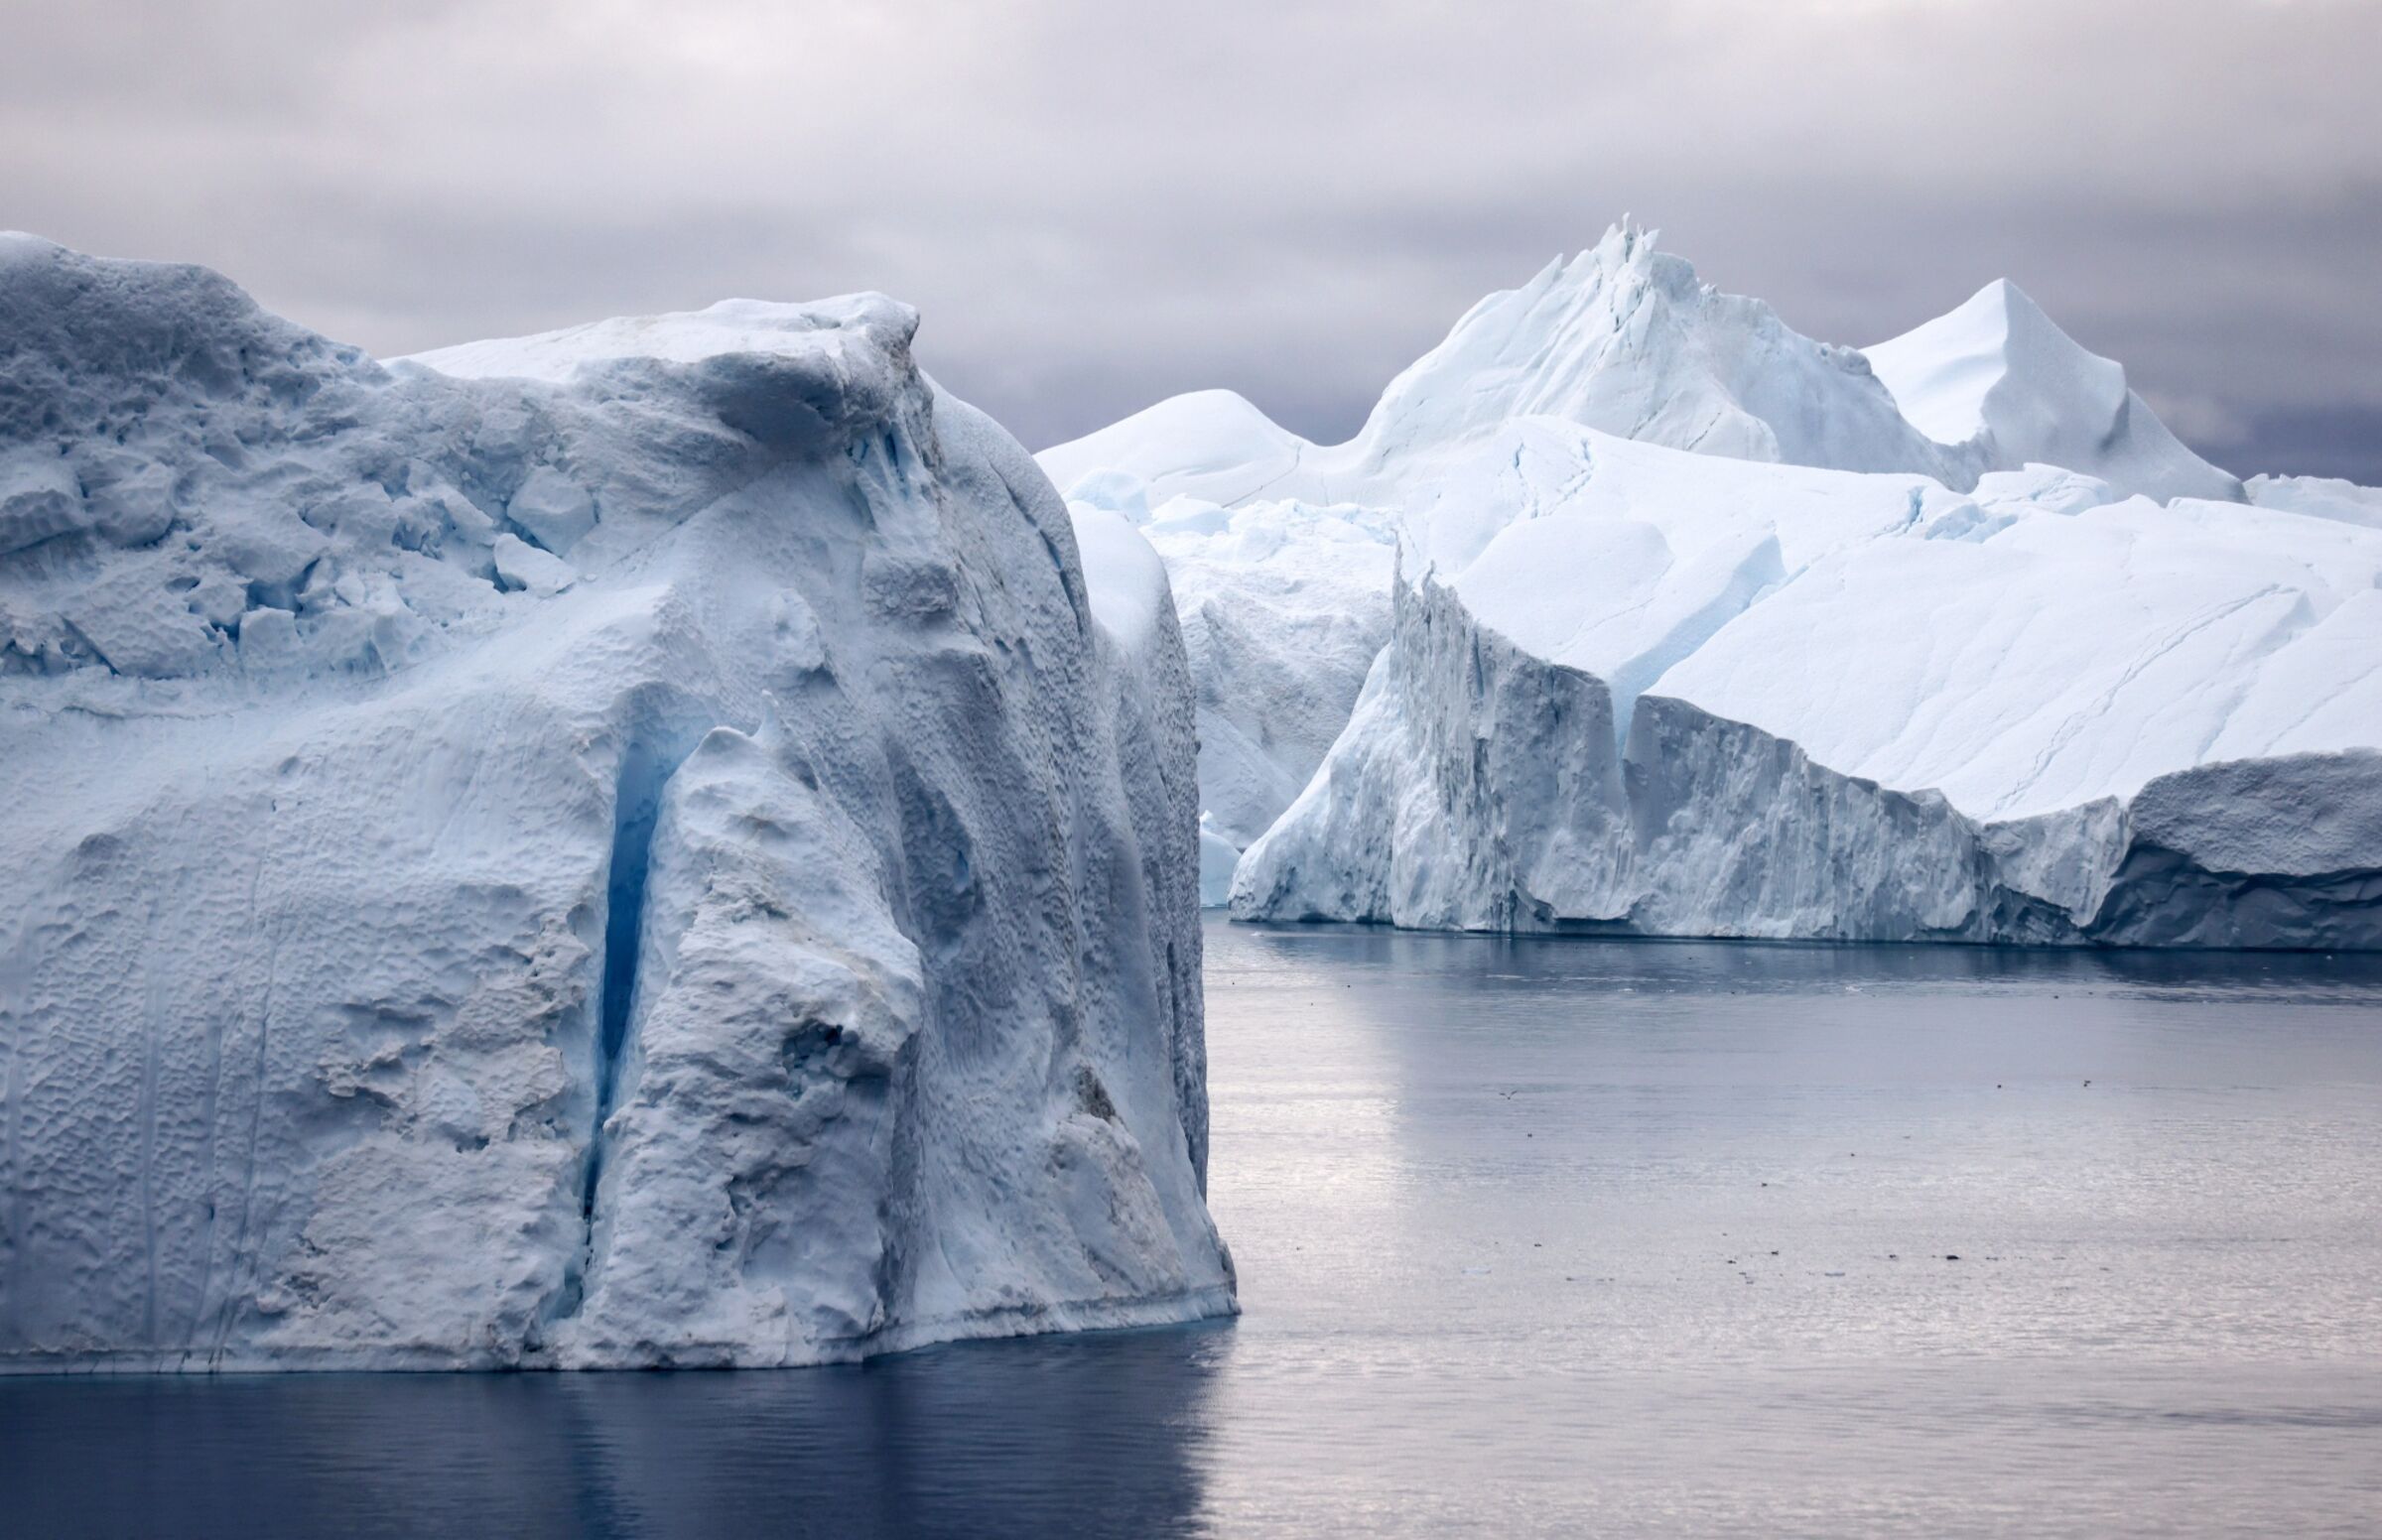 Egy nyugodt tengerben lebegő jéghegyek képe.  A jéghegyek tiszta fehérnek tűnnek, vastag hóréteggel borítva.